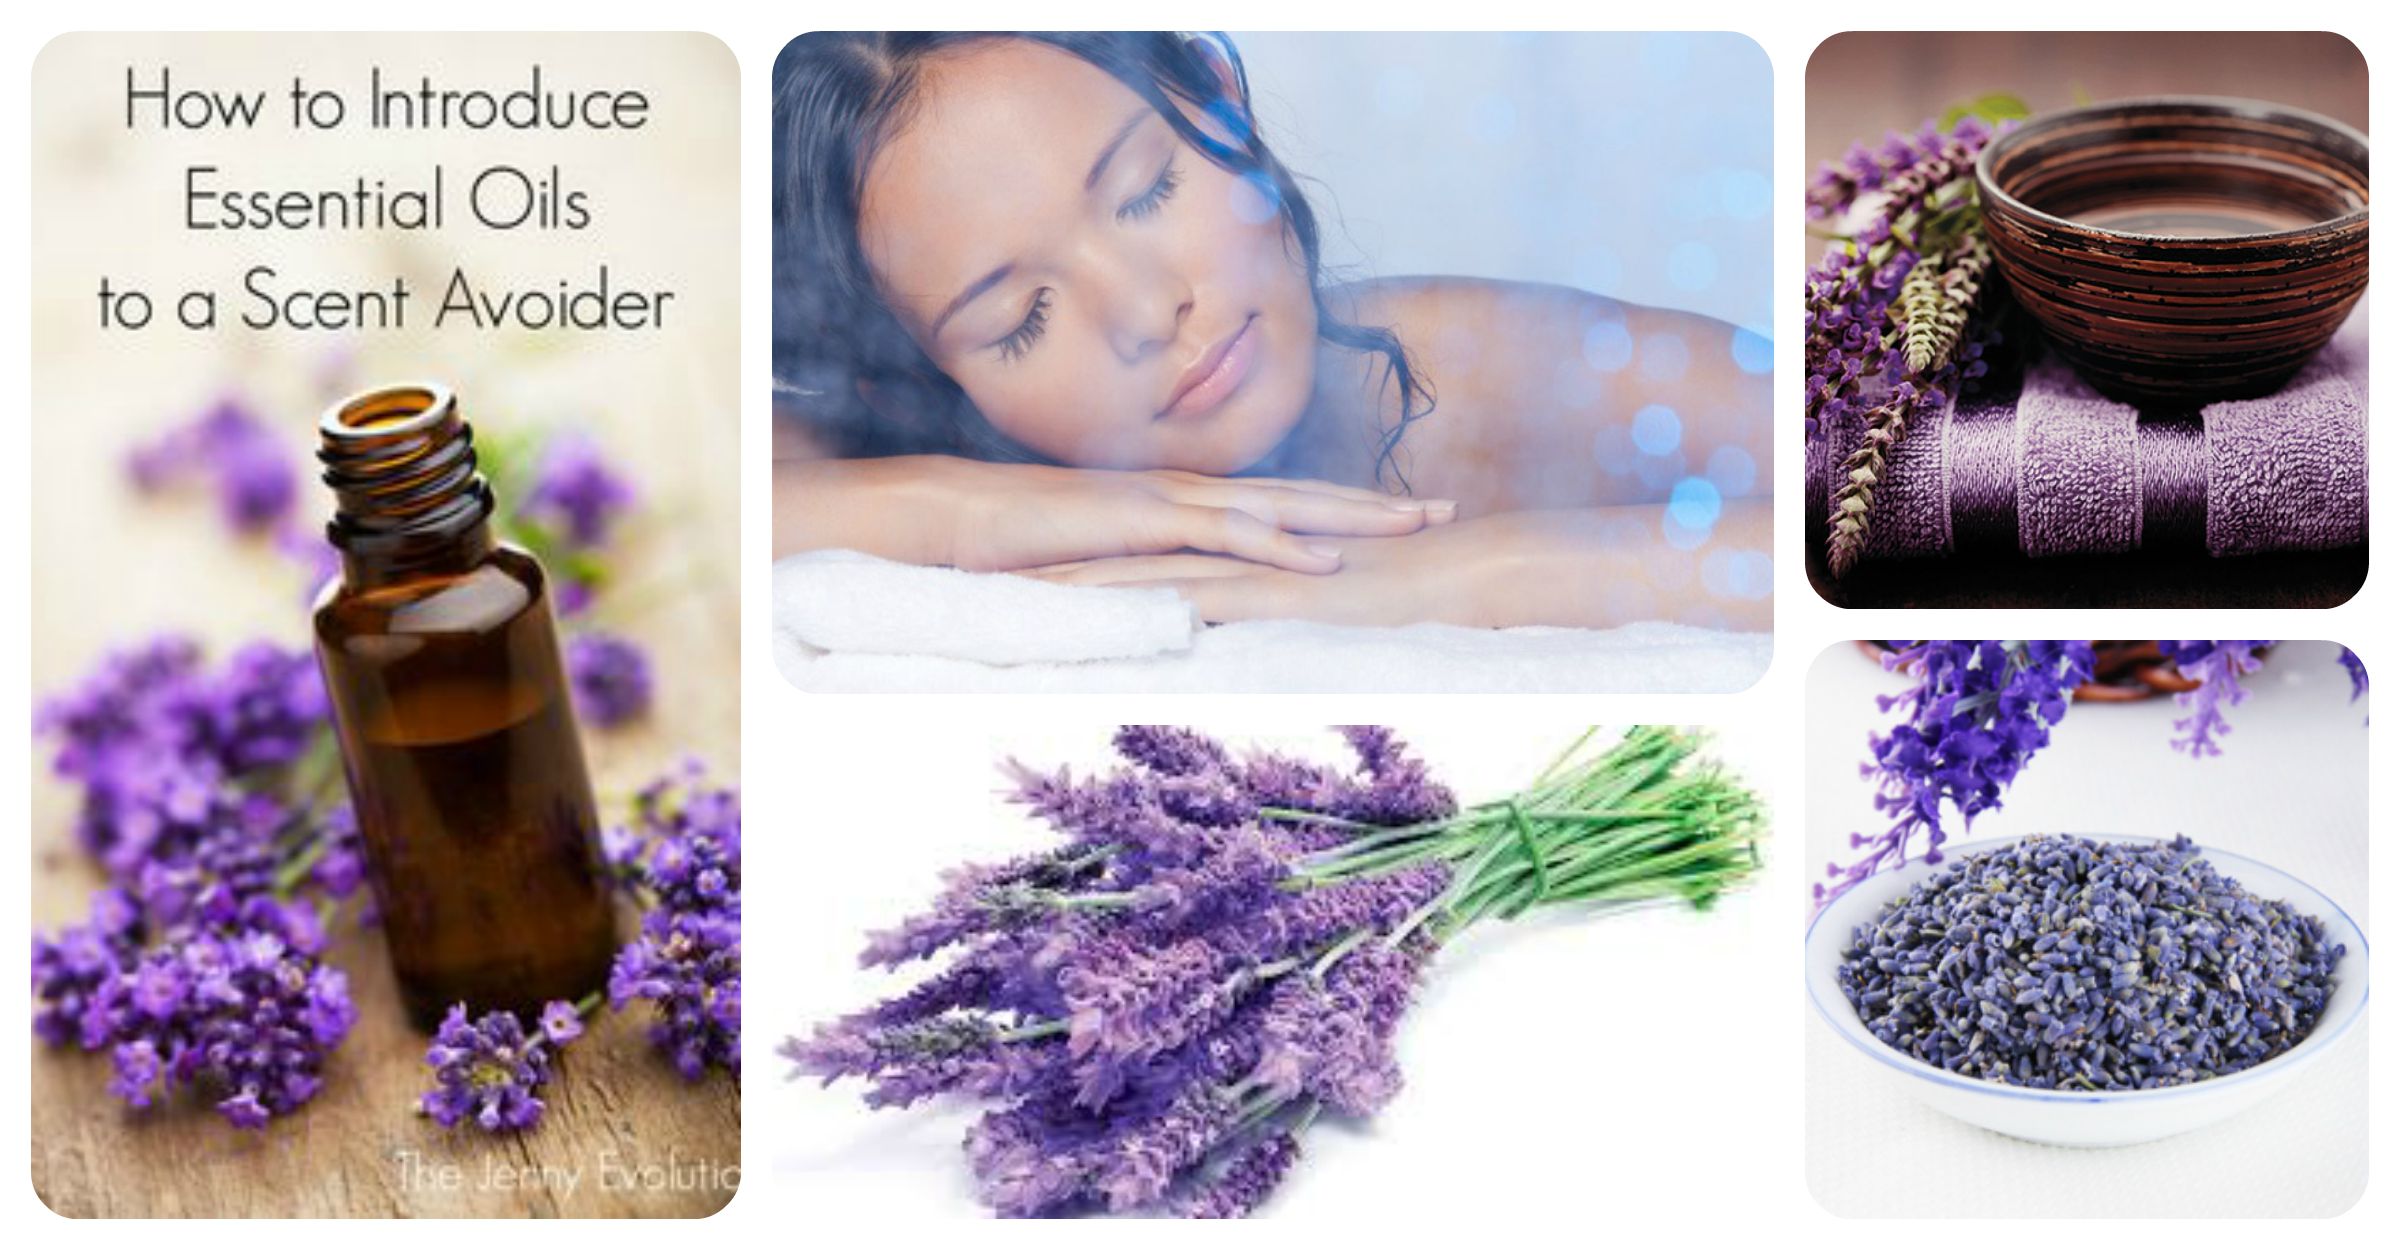 Cùng tinh dầu hoa Lavender tăng cường sức khỏe và làm đẹp